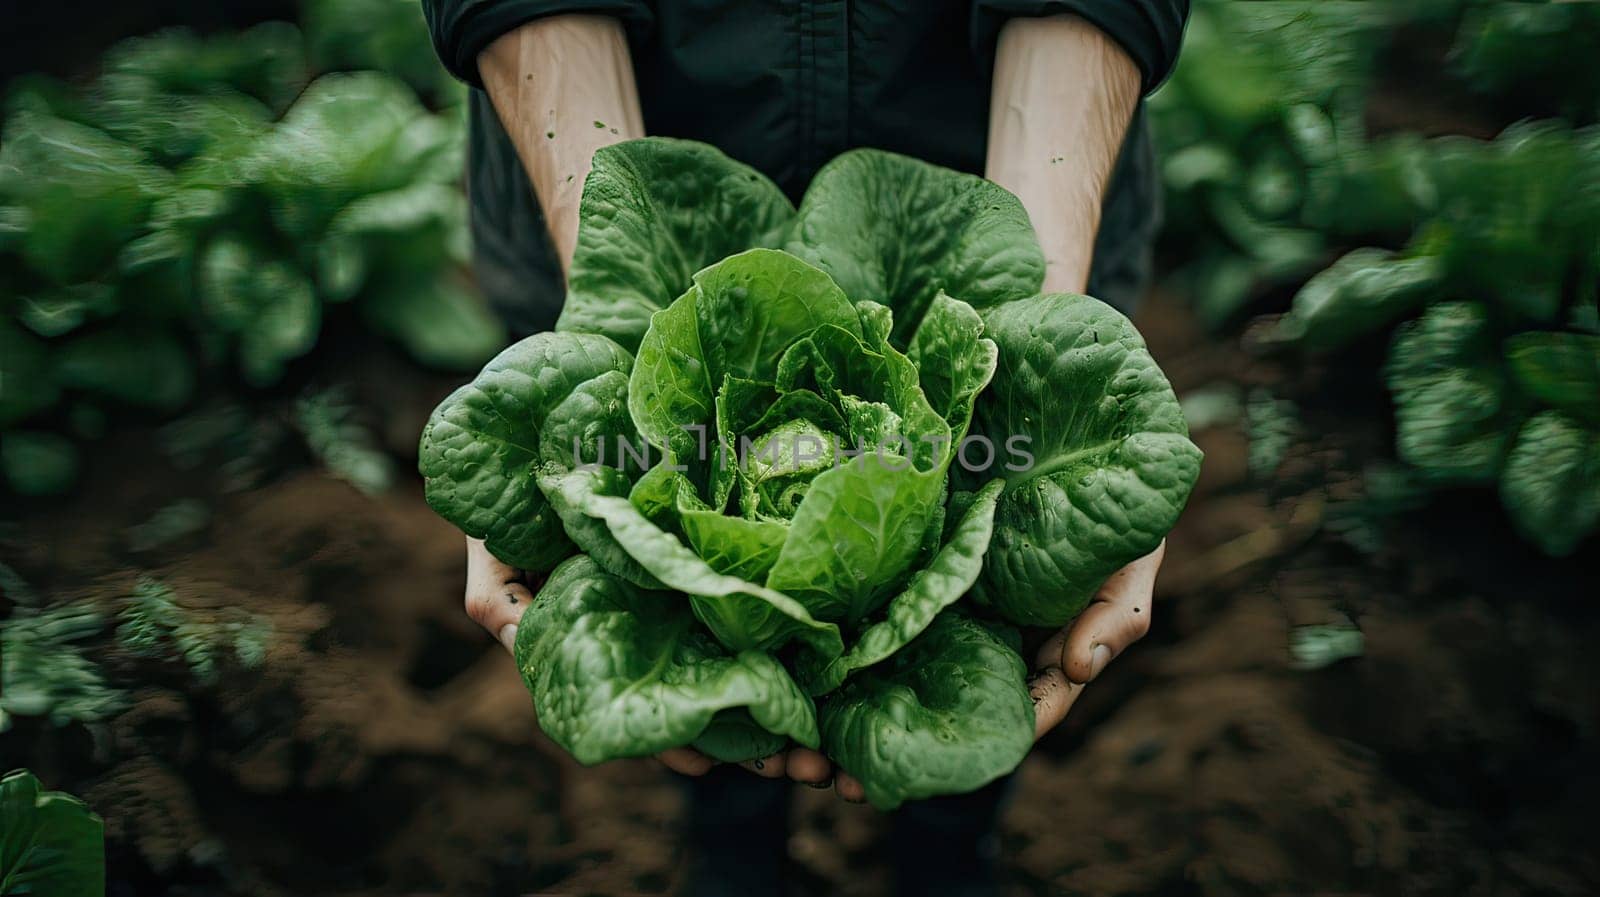 Abundant Harvest of Fresh Green Lettuce Embraced by Hands, Thriving in a Serene Garden Setting